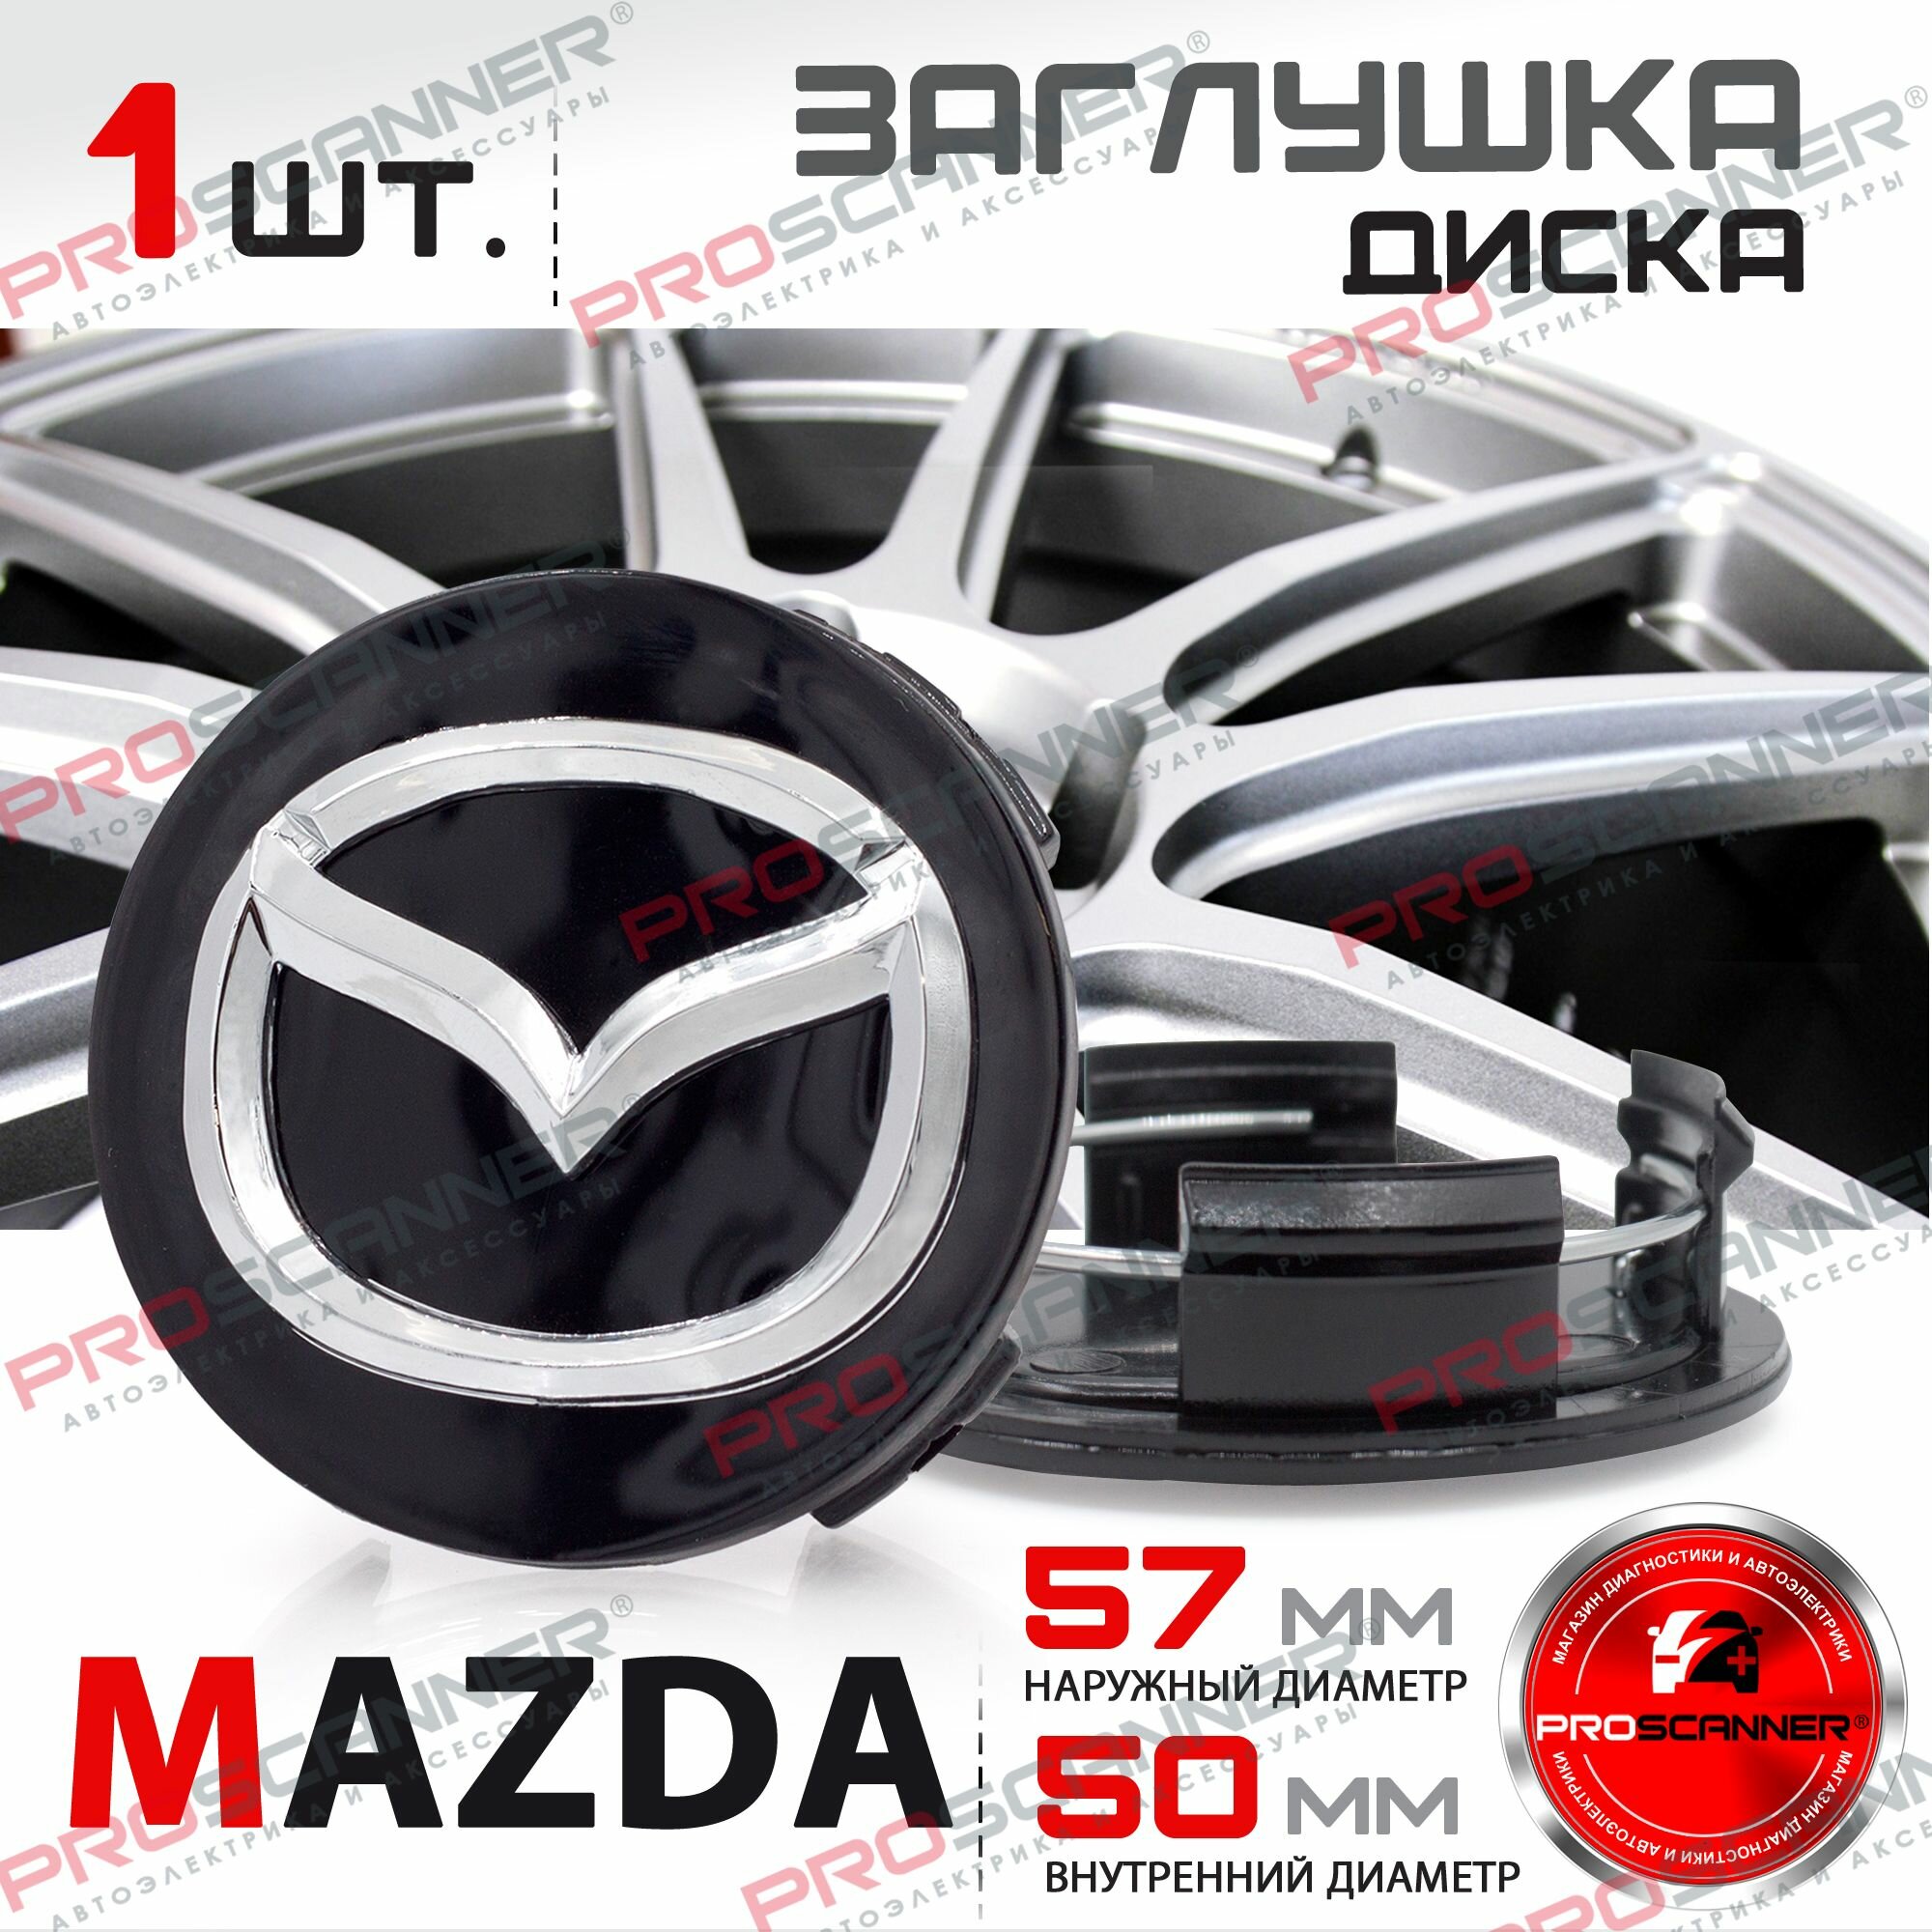 Колпачок заглушка на литой диск колеса для Mazda Мазда 57 мм - 1 штука черный